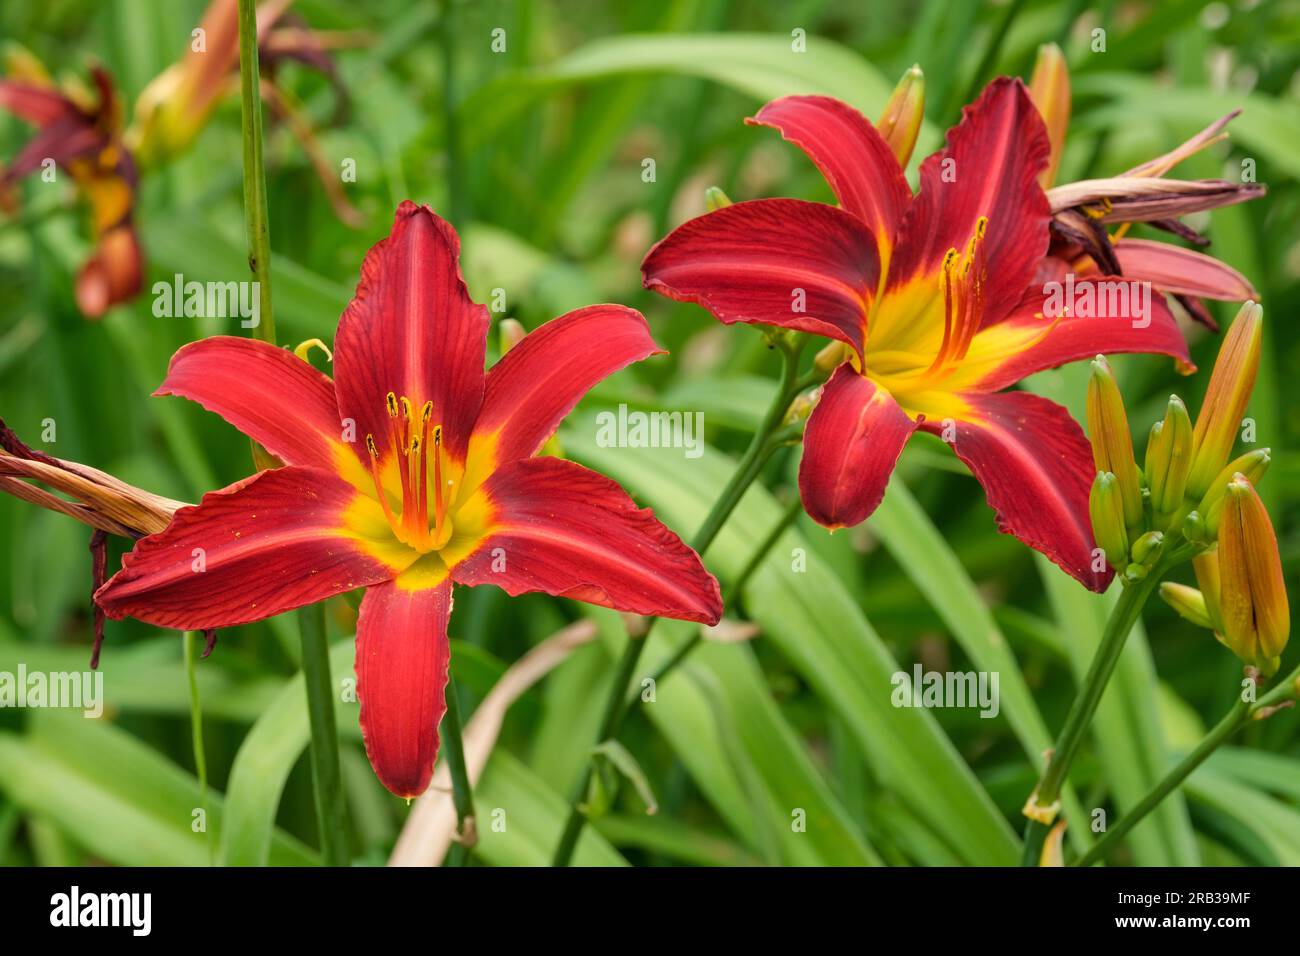 Hemerocallis Stafford, Daylys Stafford, feuillus vivaces, fleurs rouges profonds, aux pétales étroits, avec une gorge jaune Banque D'Images